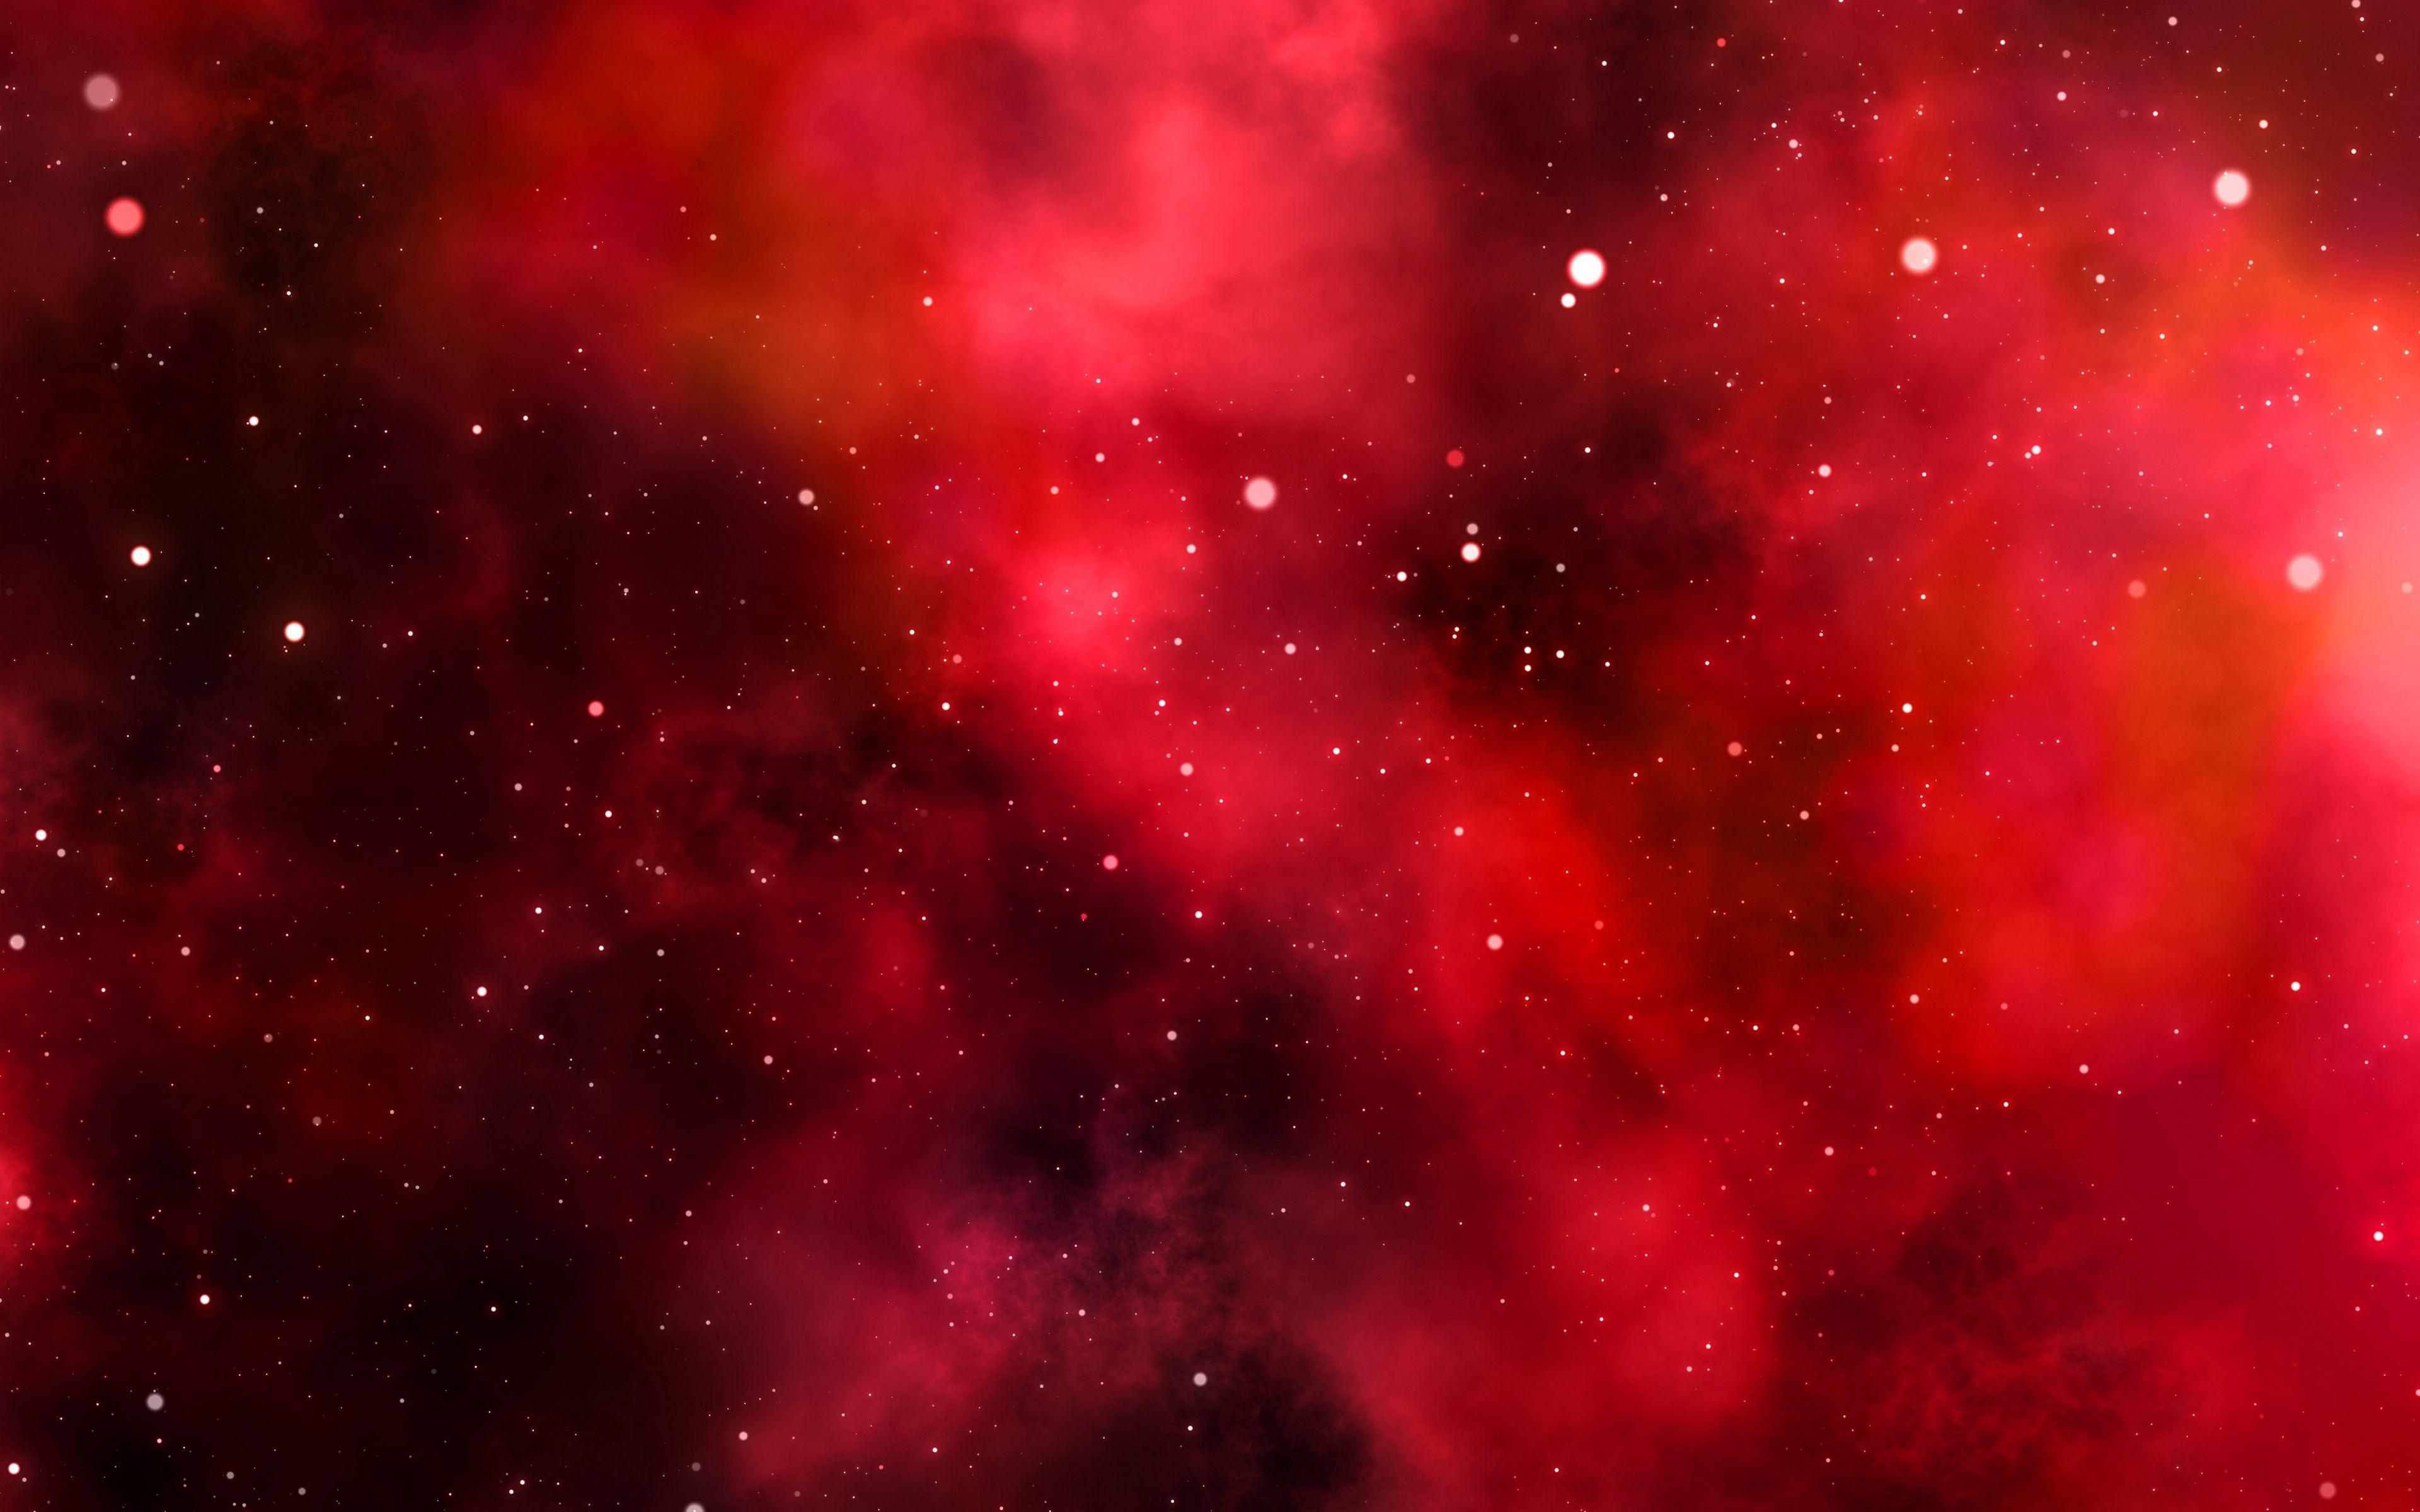 4k hình nền đại dương đỏ - Wallpaper Cave - Tăng cường màn hình của bạn với những bức ảnh độc đáo đầy màu sắc từ bộ sưu tập hình nền đại dương đỏ 4K trên Wallpaper Cave. Sử dụng chúng để tạo bầu không khí mới mẻ và làm cho màn hình của bạn nổi bật hơn với đầy đủ những chi tiết tuyệt đẹp của vũ trụ.